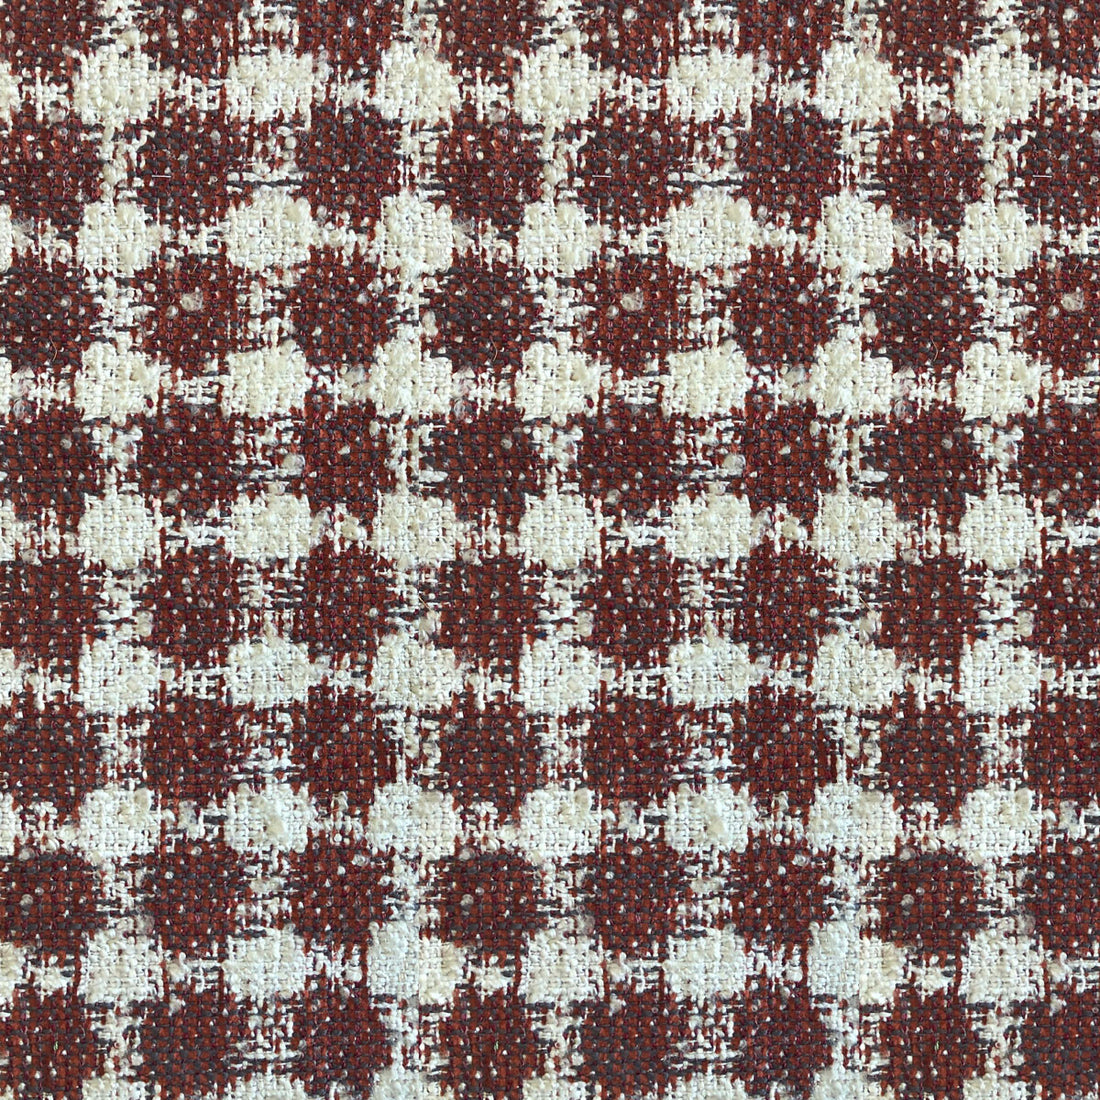 Predraza fabric in rojo color - pattern LCT1050.003.0 - by Gaston y Daniela in the Lorenzo Castillo VI collection